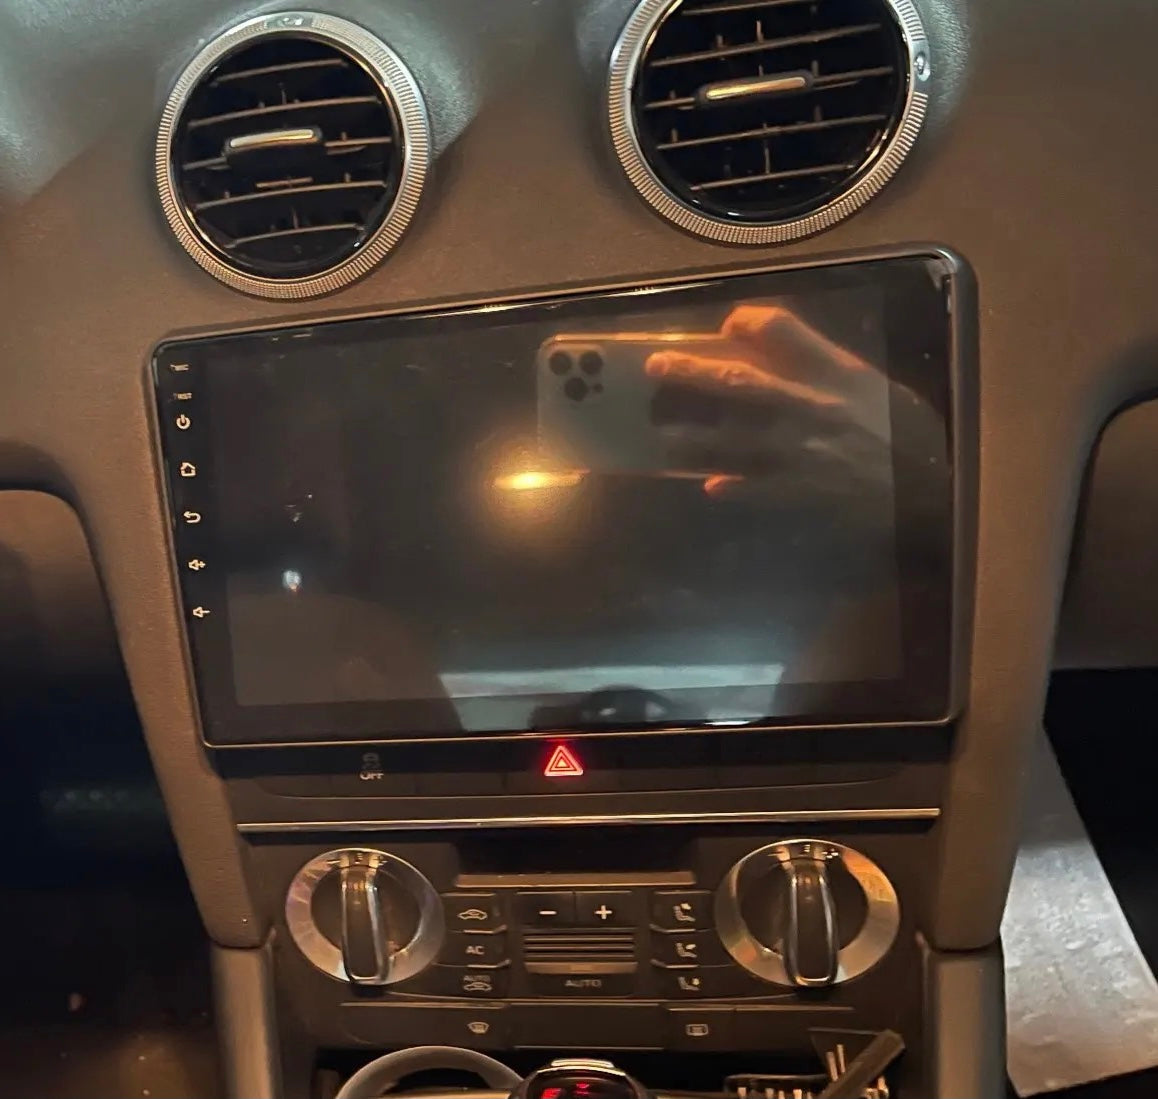 KIT Autoradio Navigation GPS et Carplay Audi A3 